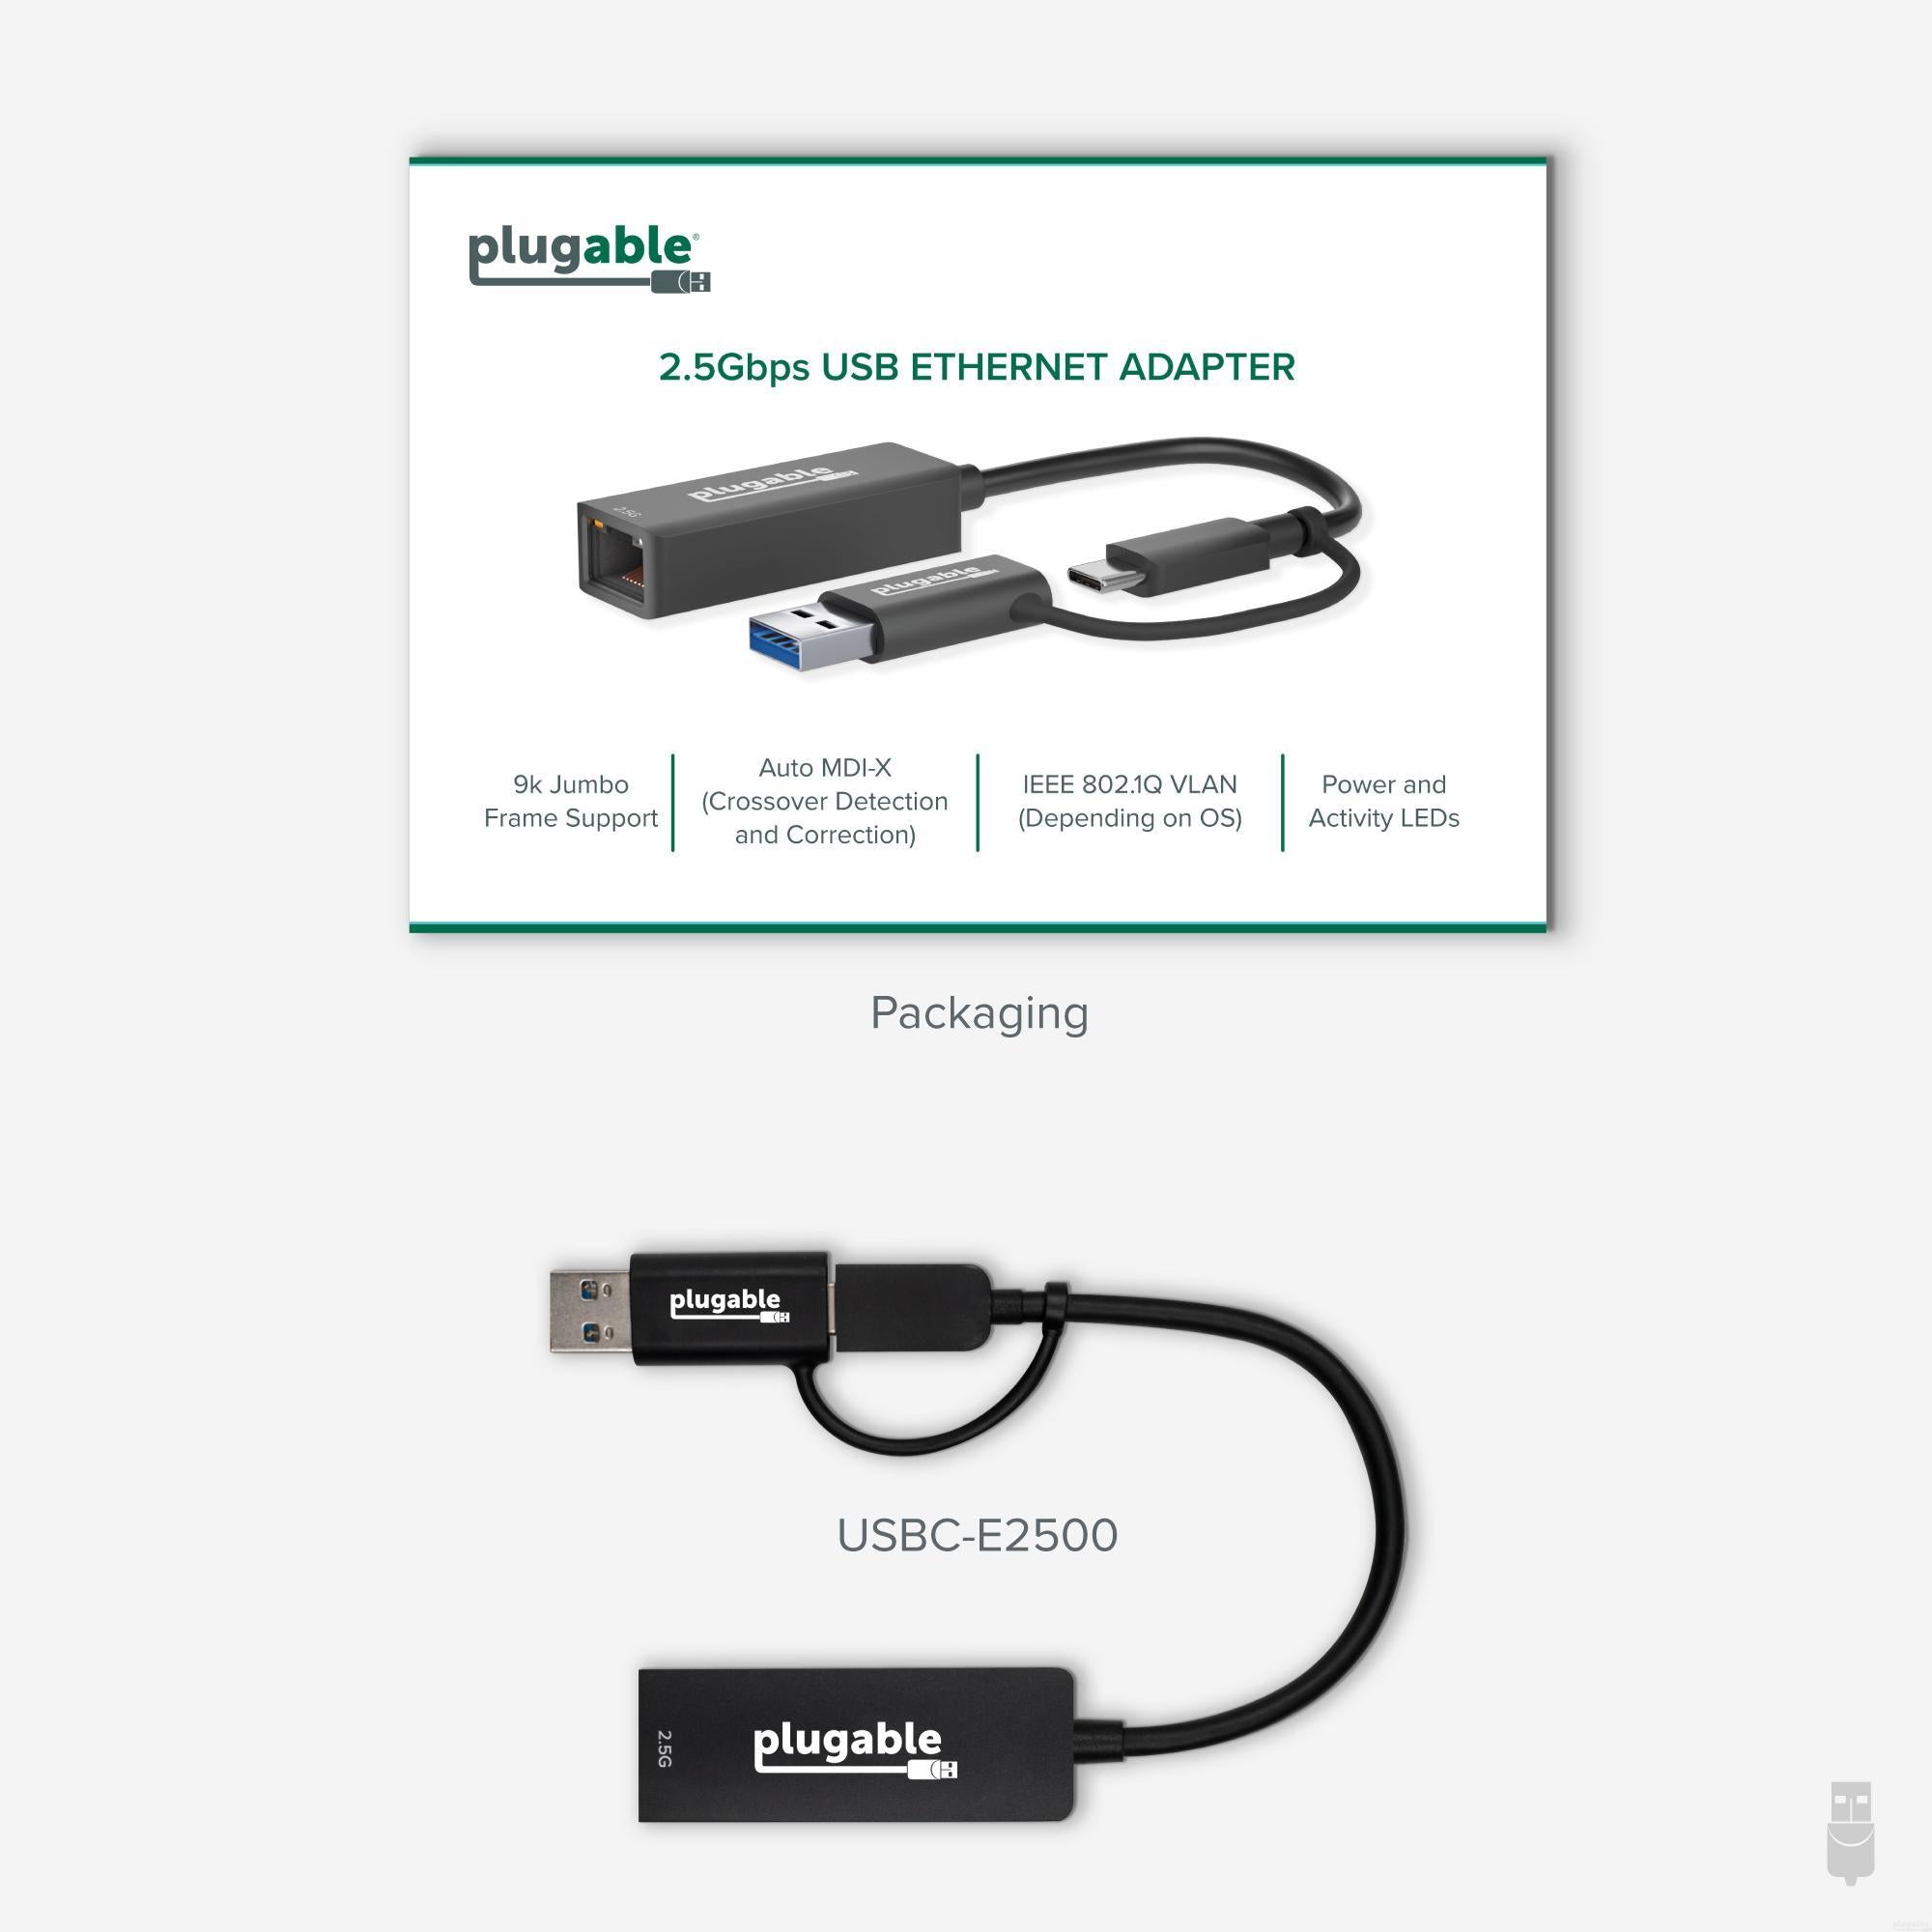 Adaptateur USB-C vers Ethernet Gigabit de Belkin - Apple (CA)